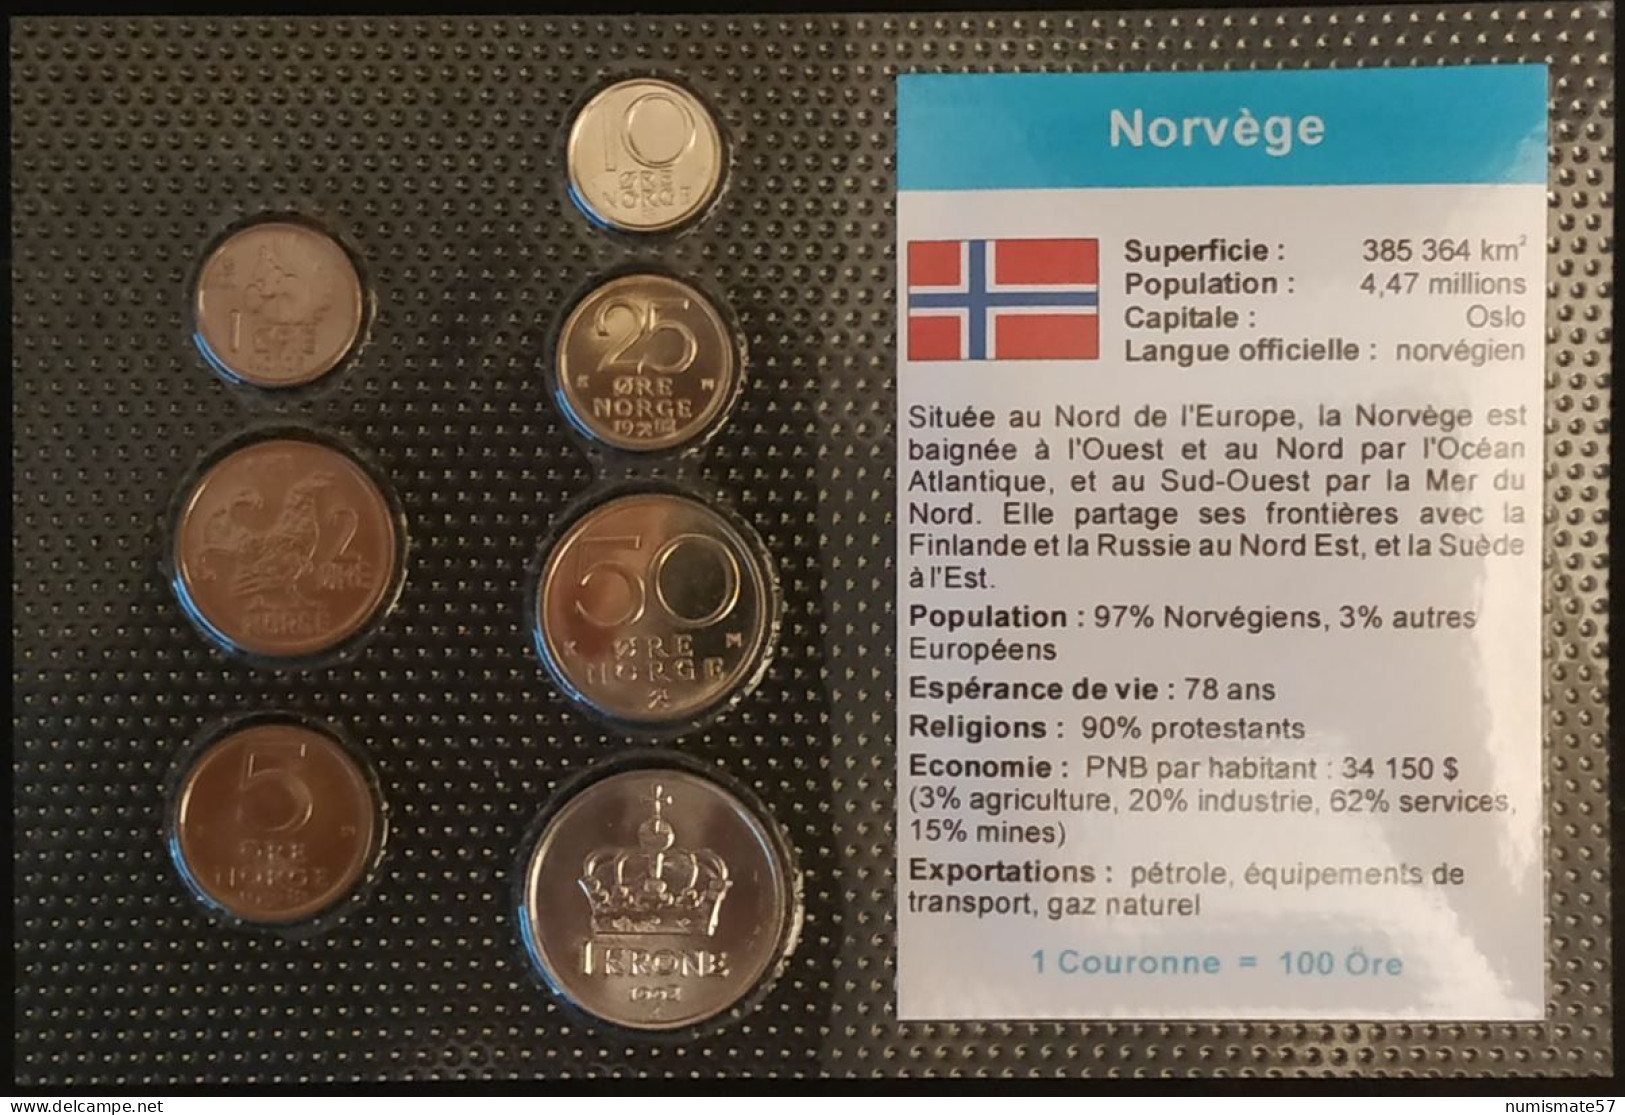 NORVEGE - NORWAY - SERIE DE 7 PIECES DIFFERENTES - 1 - 2 - 5 - 10 - 25 - 50 - ORE - 1 KRONE - Norvège